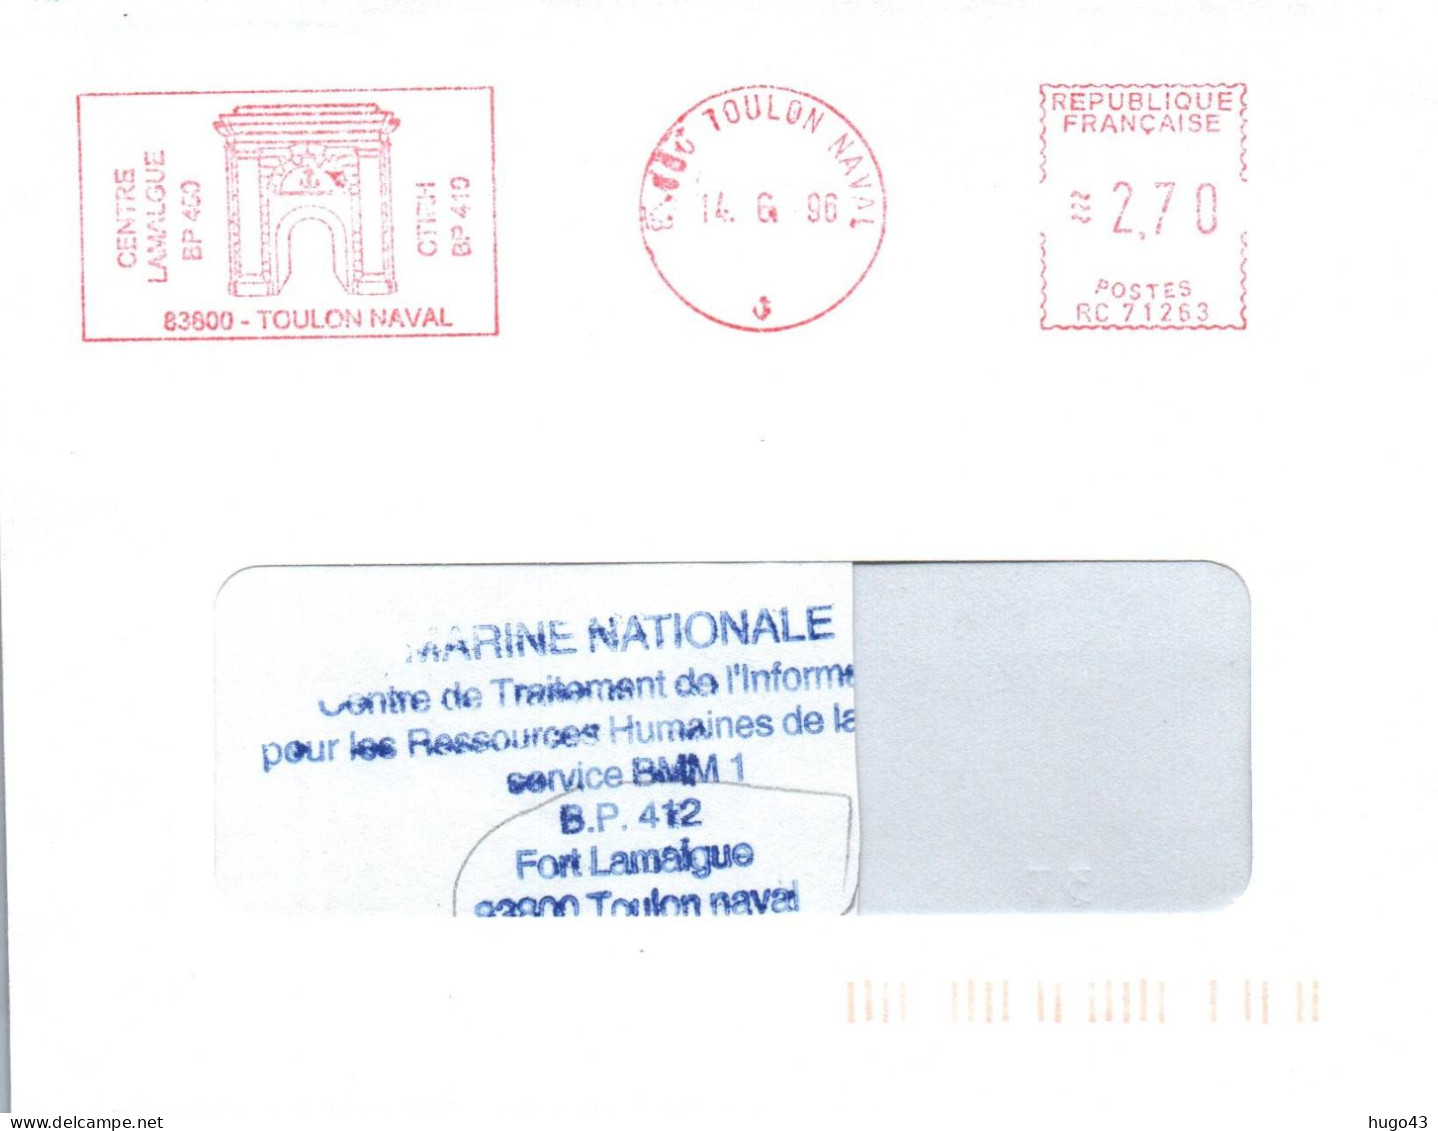 ENVELOPPE AVEC FLAMME E.M.A - CENTRE LAMALGUE - TOULON NAVAL - LE 14/6/96 - Naval Post